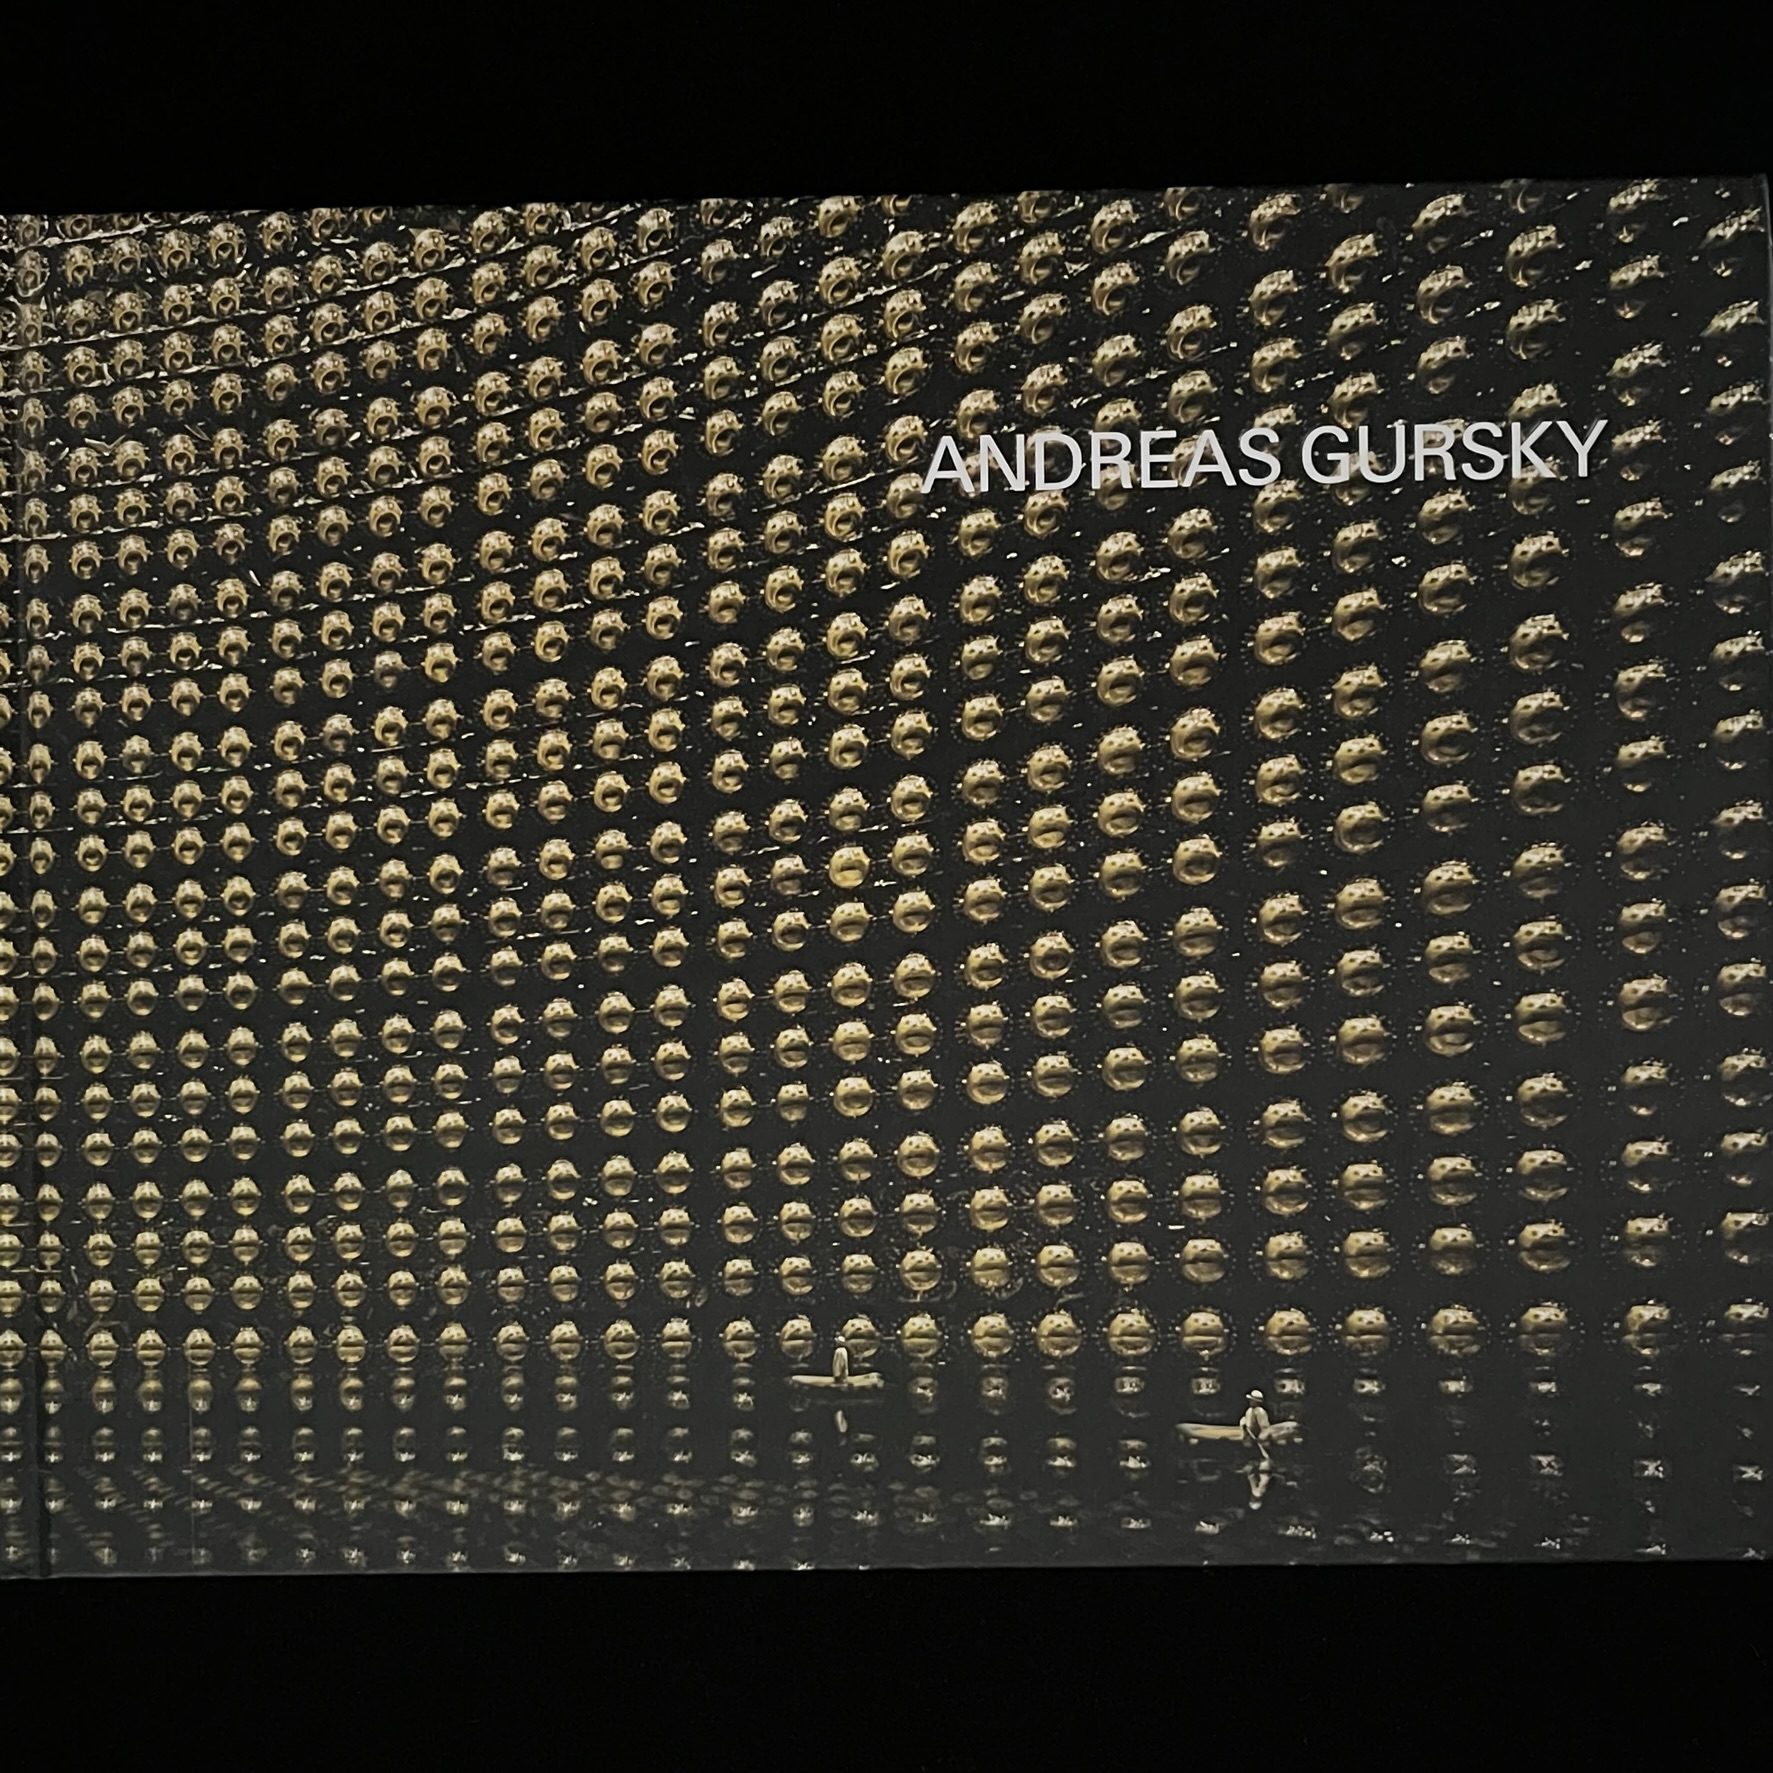 『ANDREAS GURSKY』の写真集の表紙の写真。スーパーカミオカンデのニュートリノの痕跡をとらえる１万個以上の丸い光センサーが壁面びっしり配置されています。床の部分は水がたたえられていて、人が乗った小舟が２艘浮かんでいます。